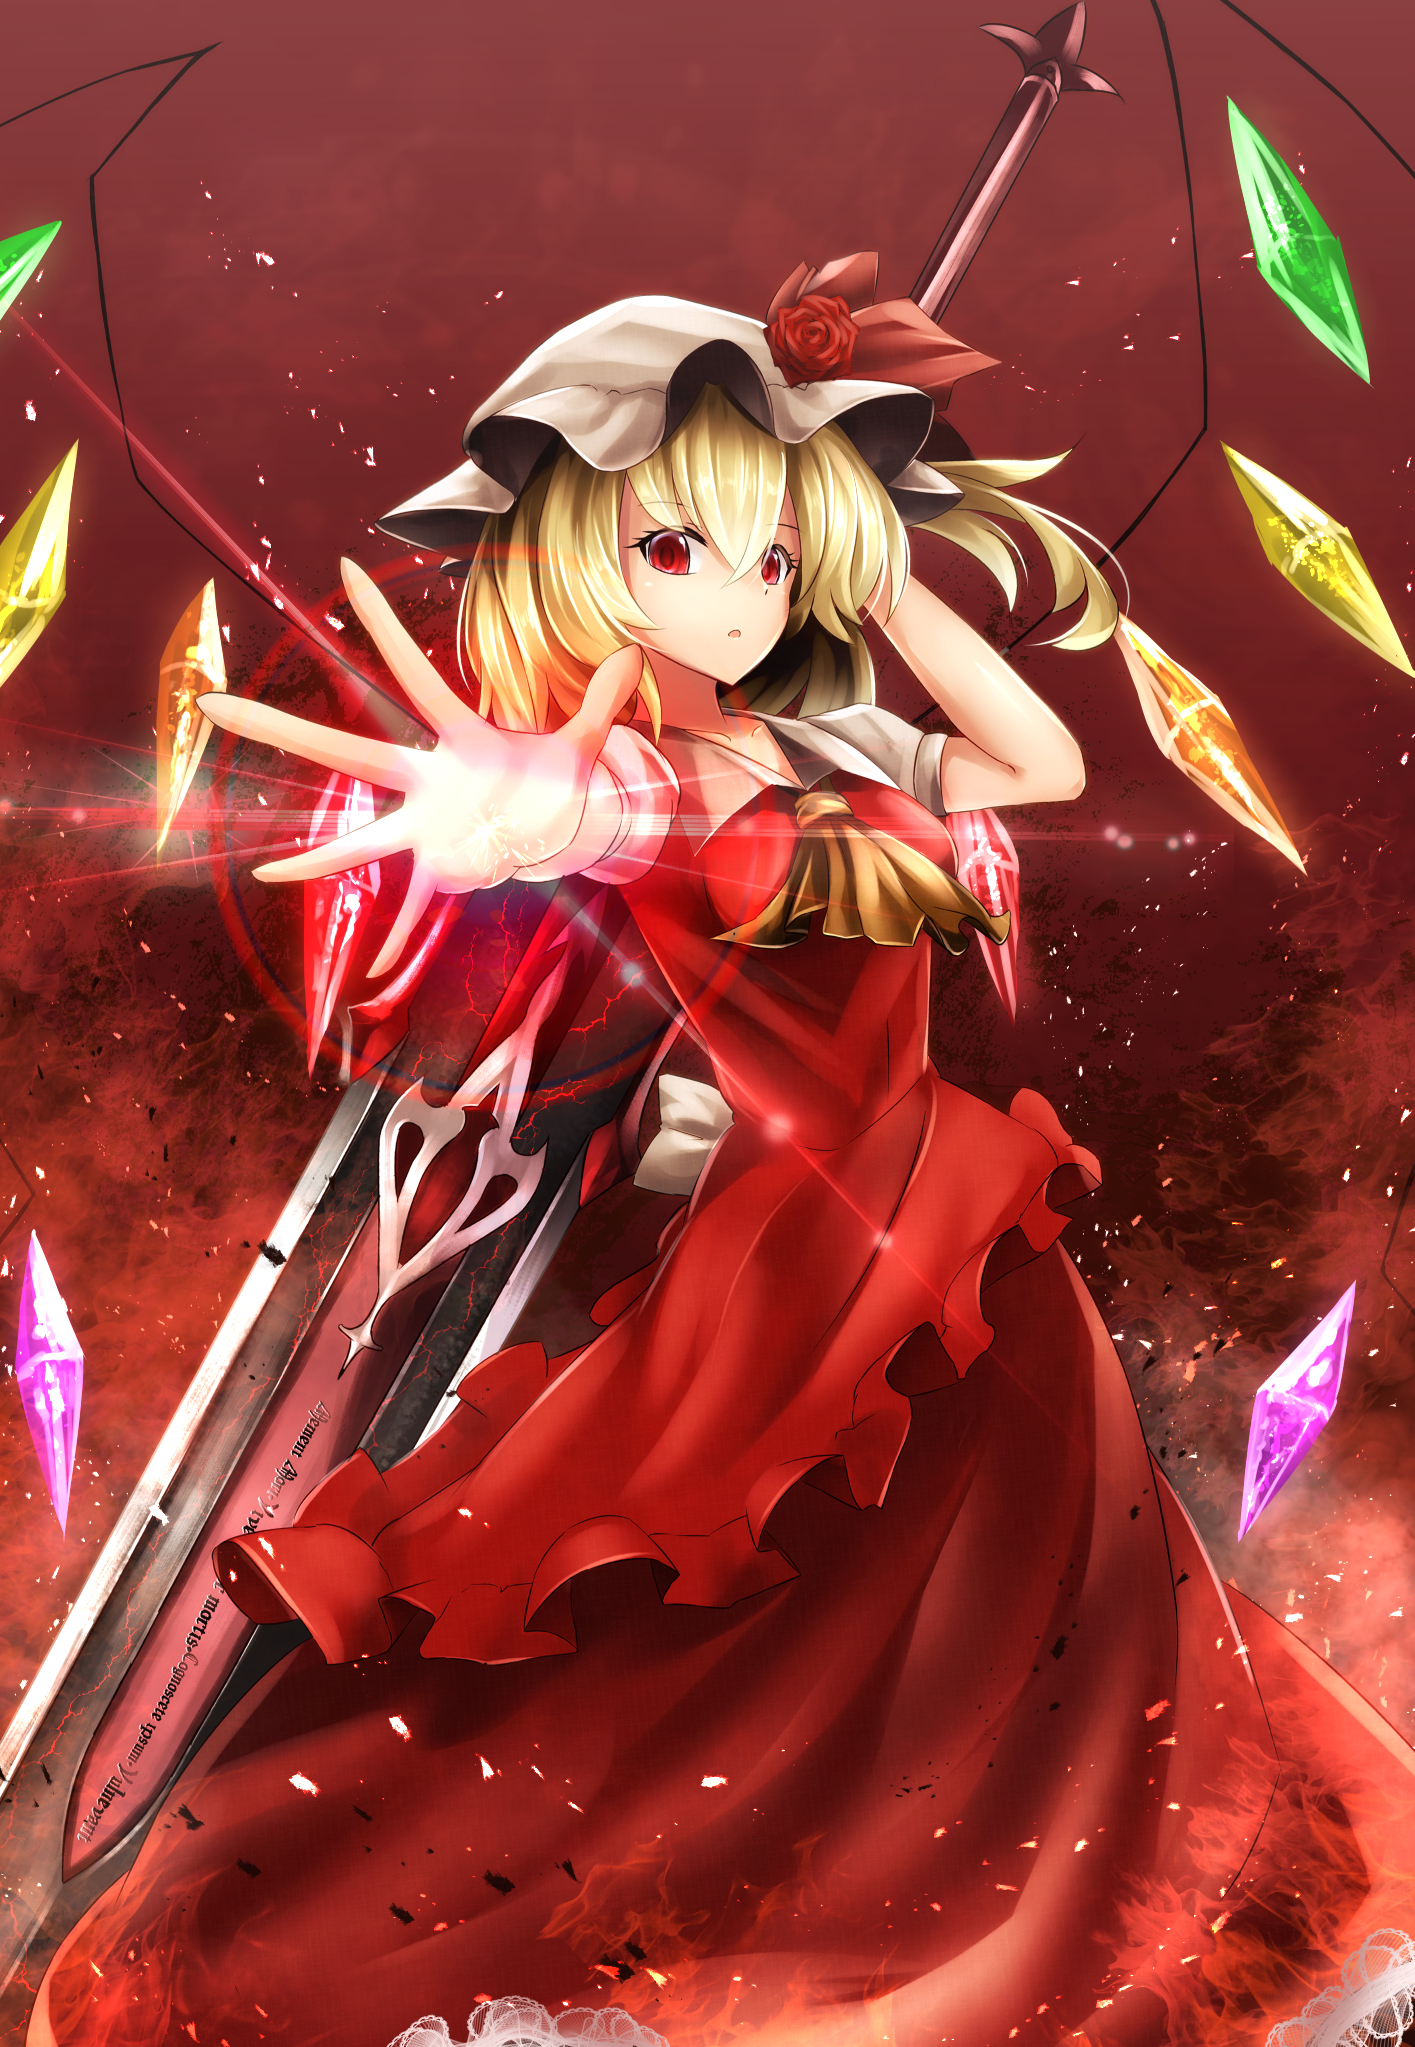 Touhou Flandre Scarlet Anime Girls Sinkai Blonde Red Eyes Dress Red Dress Wings Weapon 1415x2047